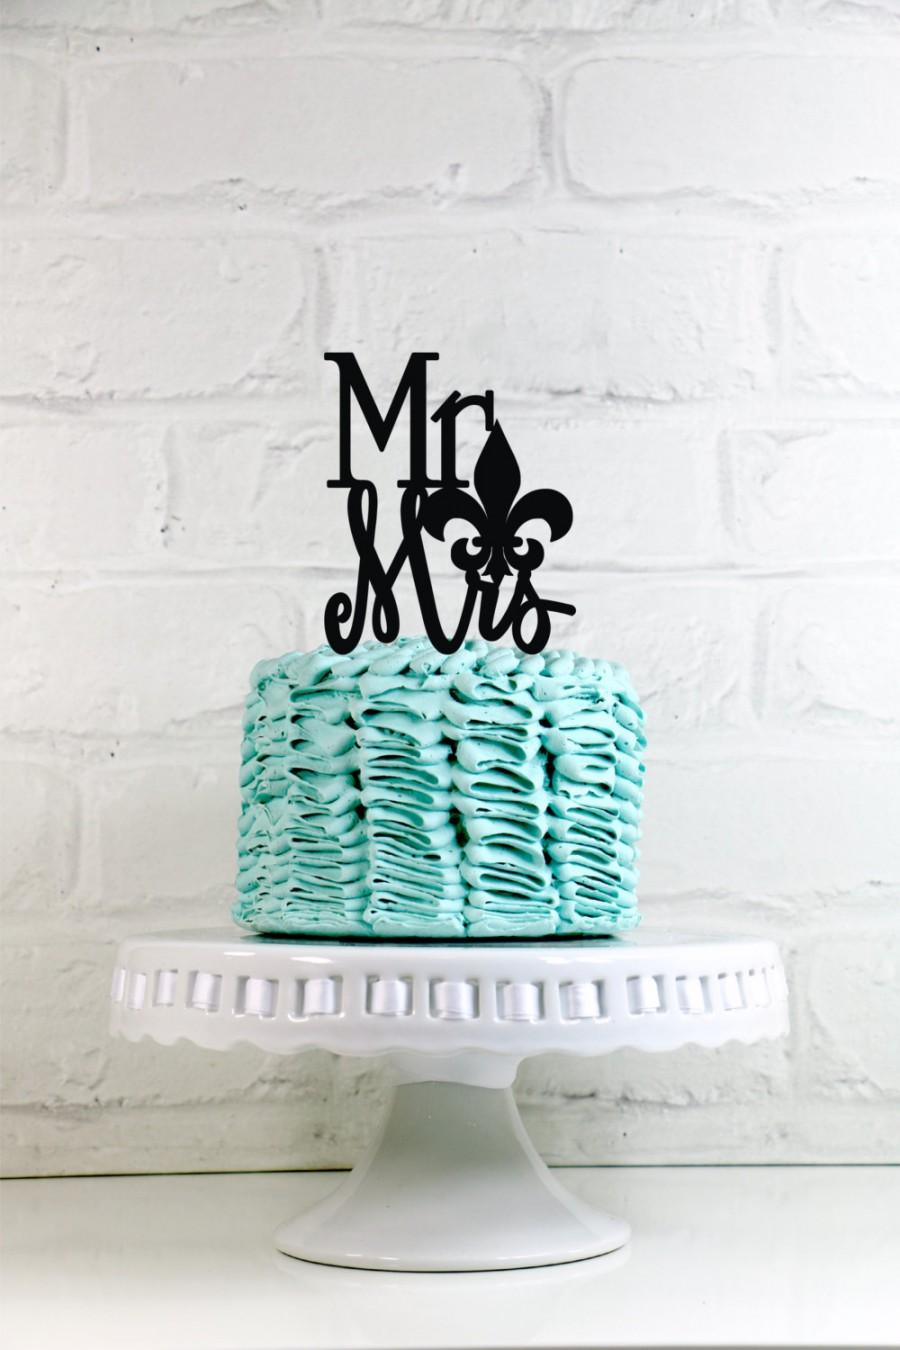 زفاف - Mr & Mrs Fleur de lis Wedding Cake Topper or Sign Perfect for New Orleans themed Weddings